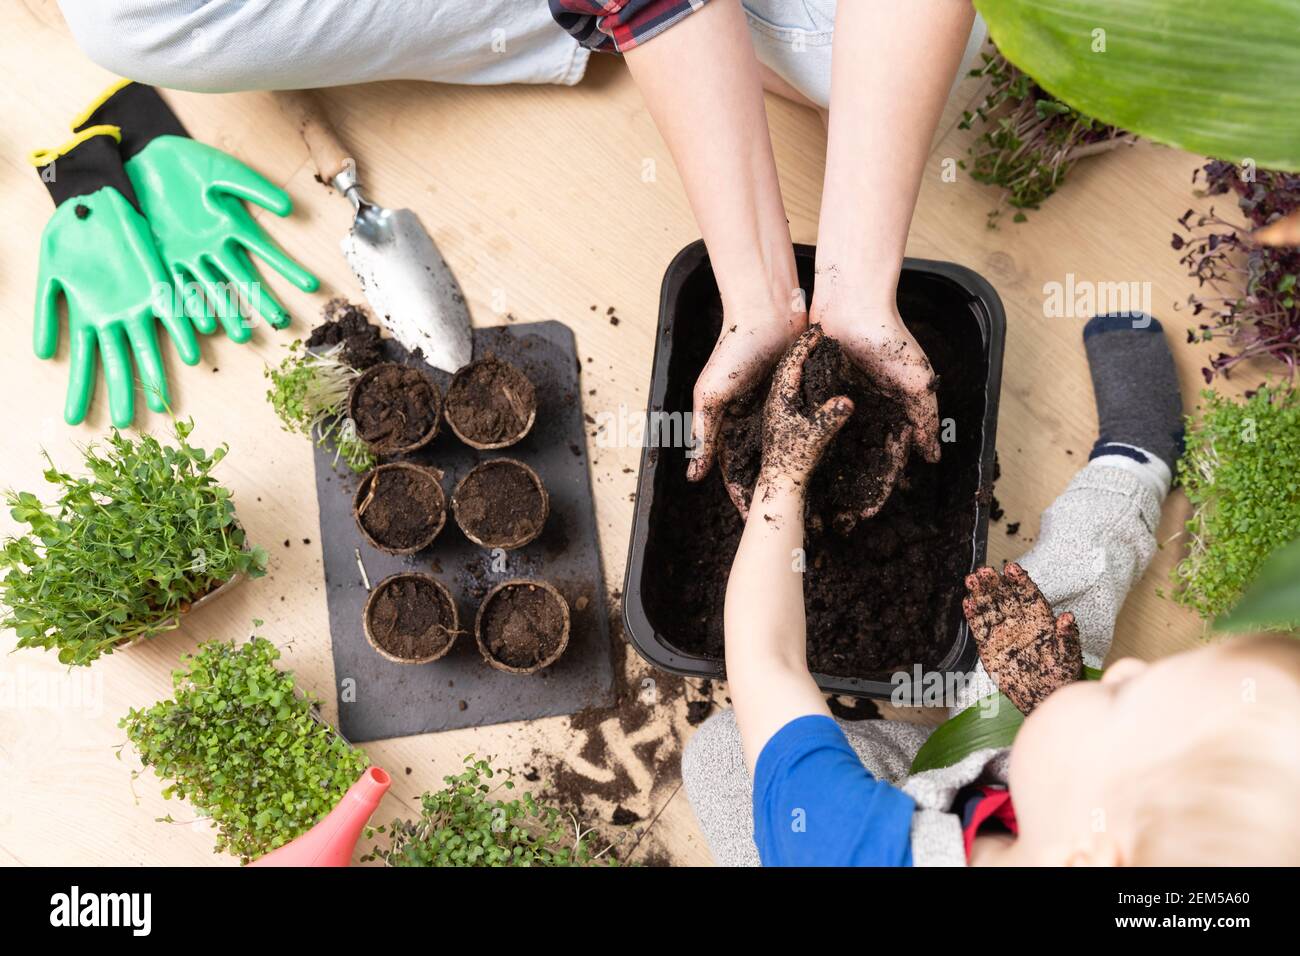 Vue de dessus d'une mère et d'un enfant préparant le sol pour les graines. Passe-temps à la maison et apprentissage de la botanique. Banque D'Images